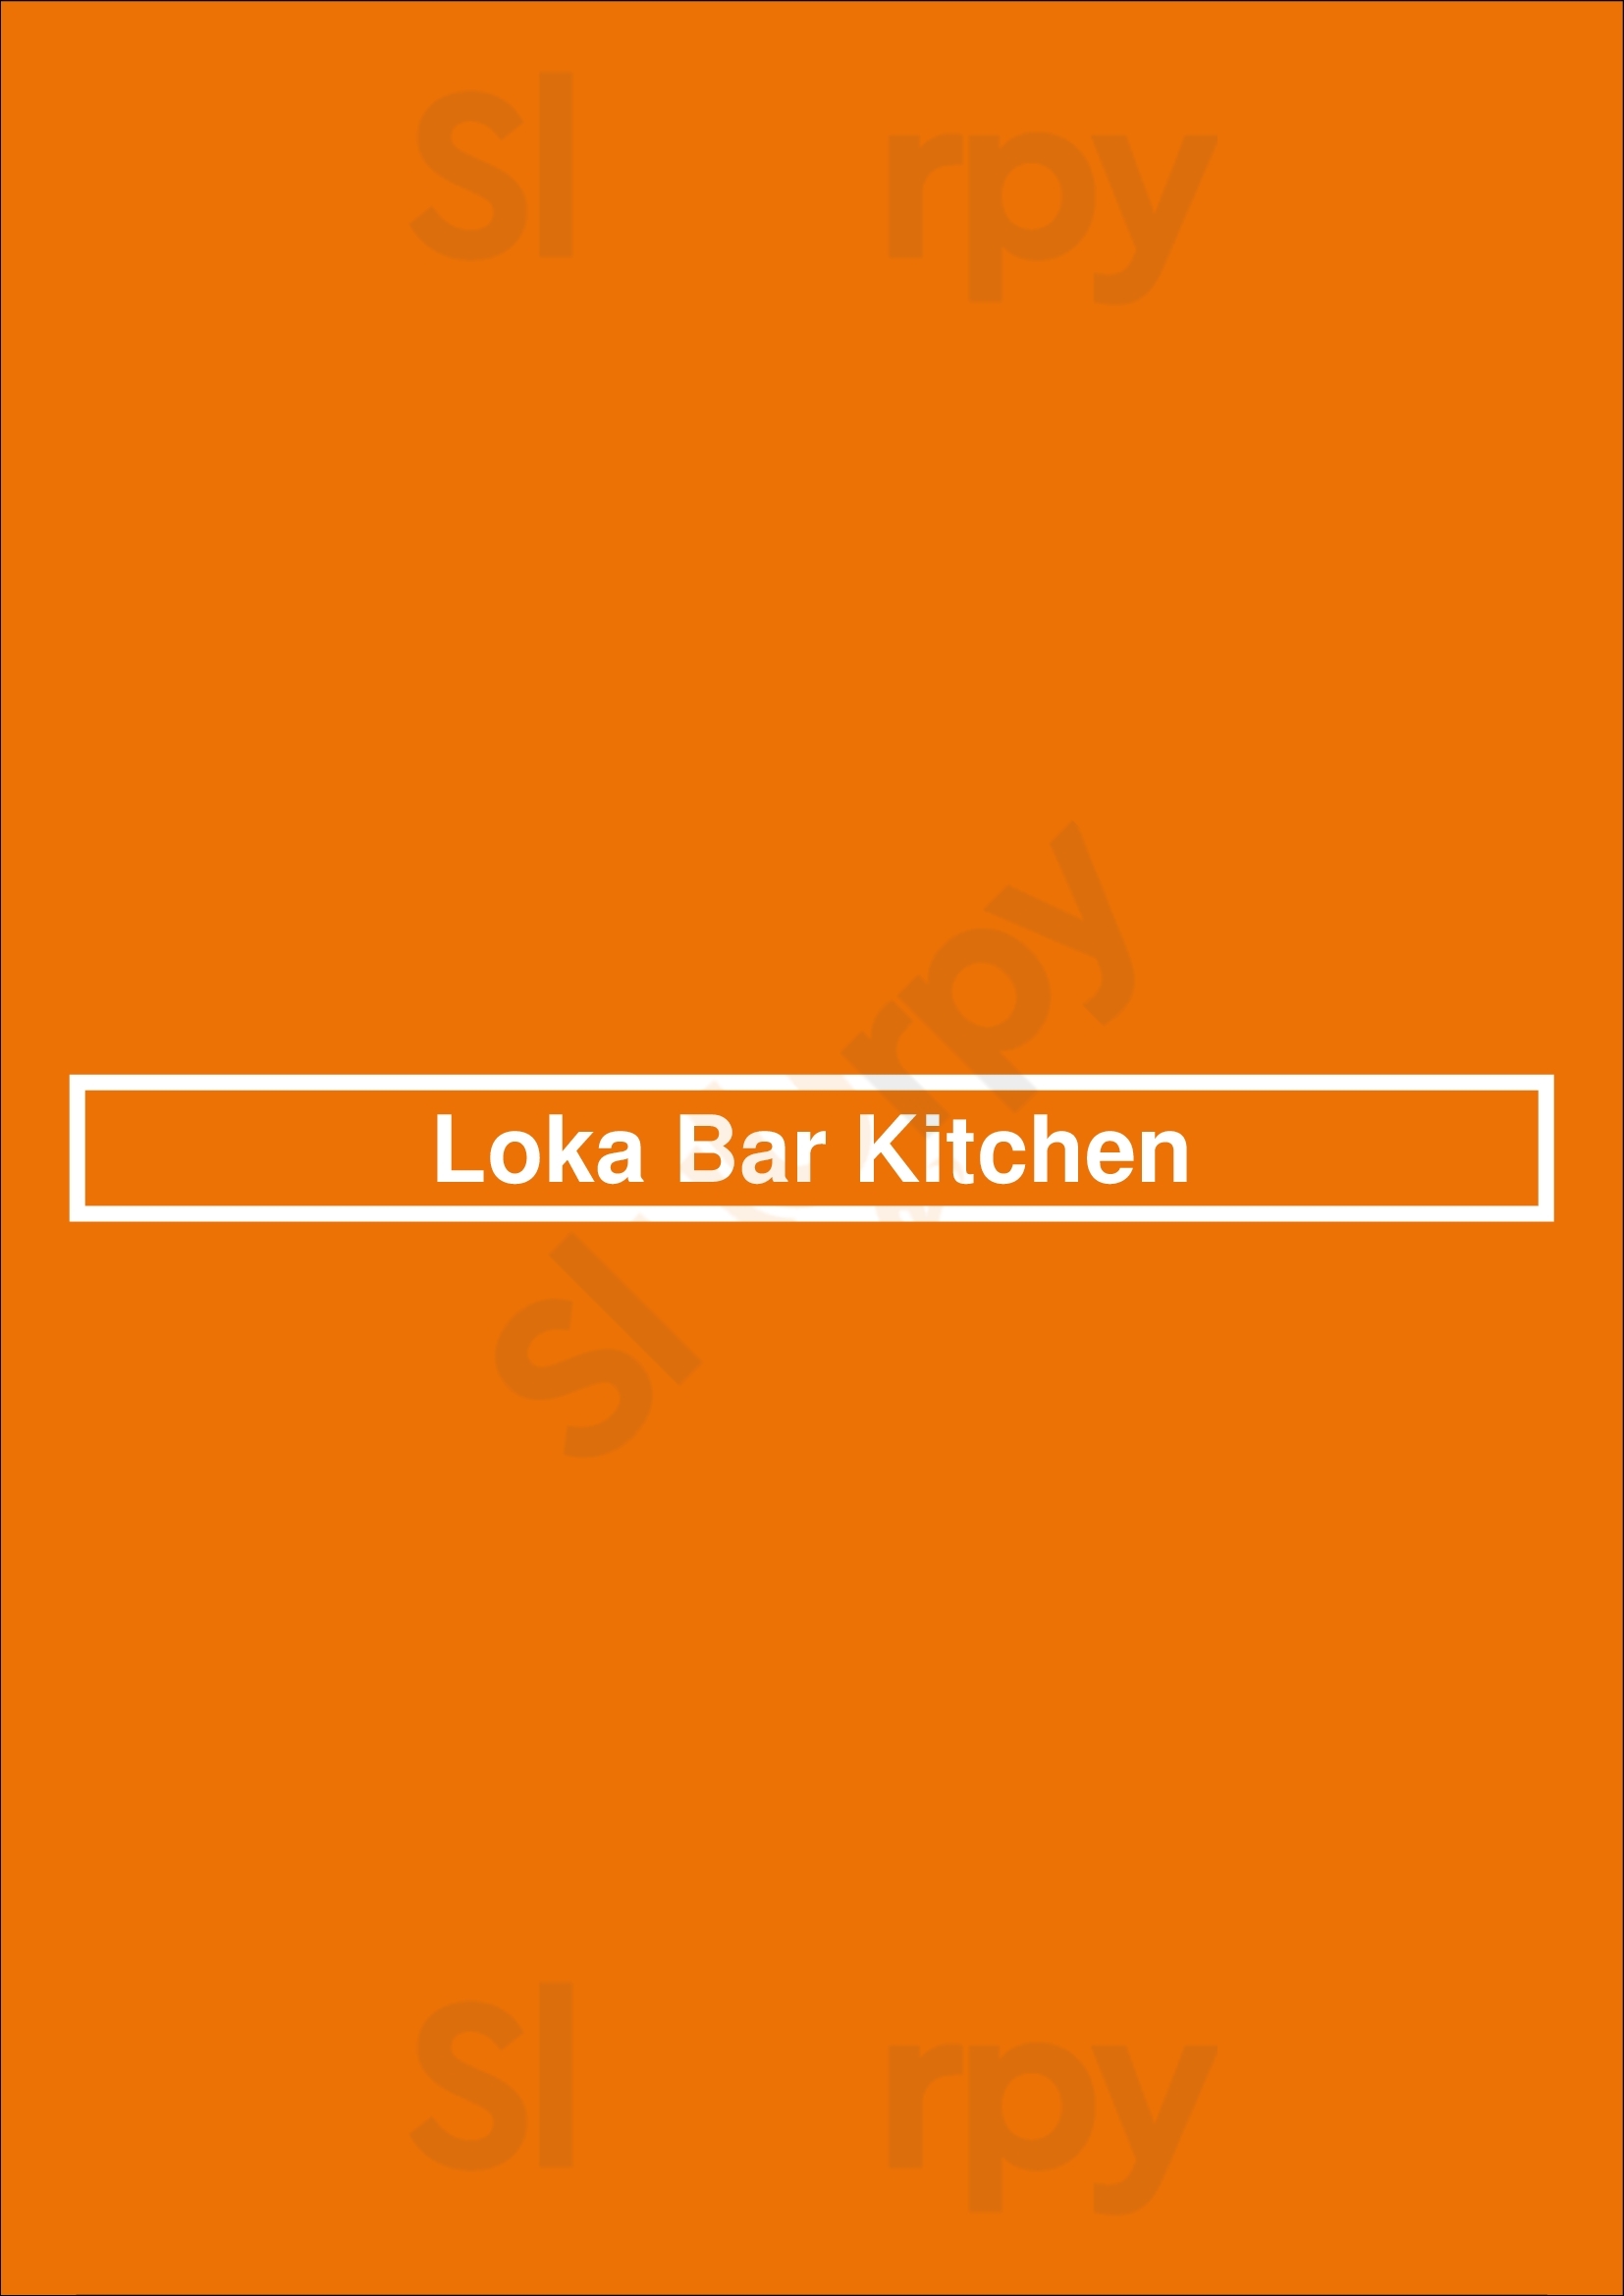 Loka Bar Kitchen Cannes Menu - 1